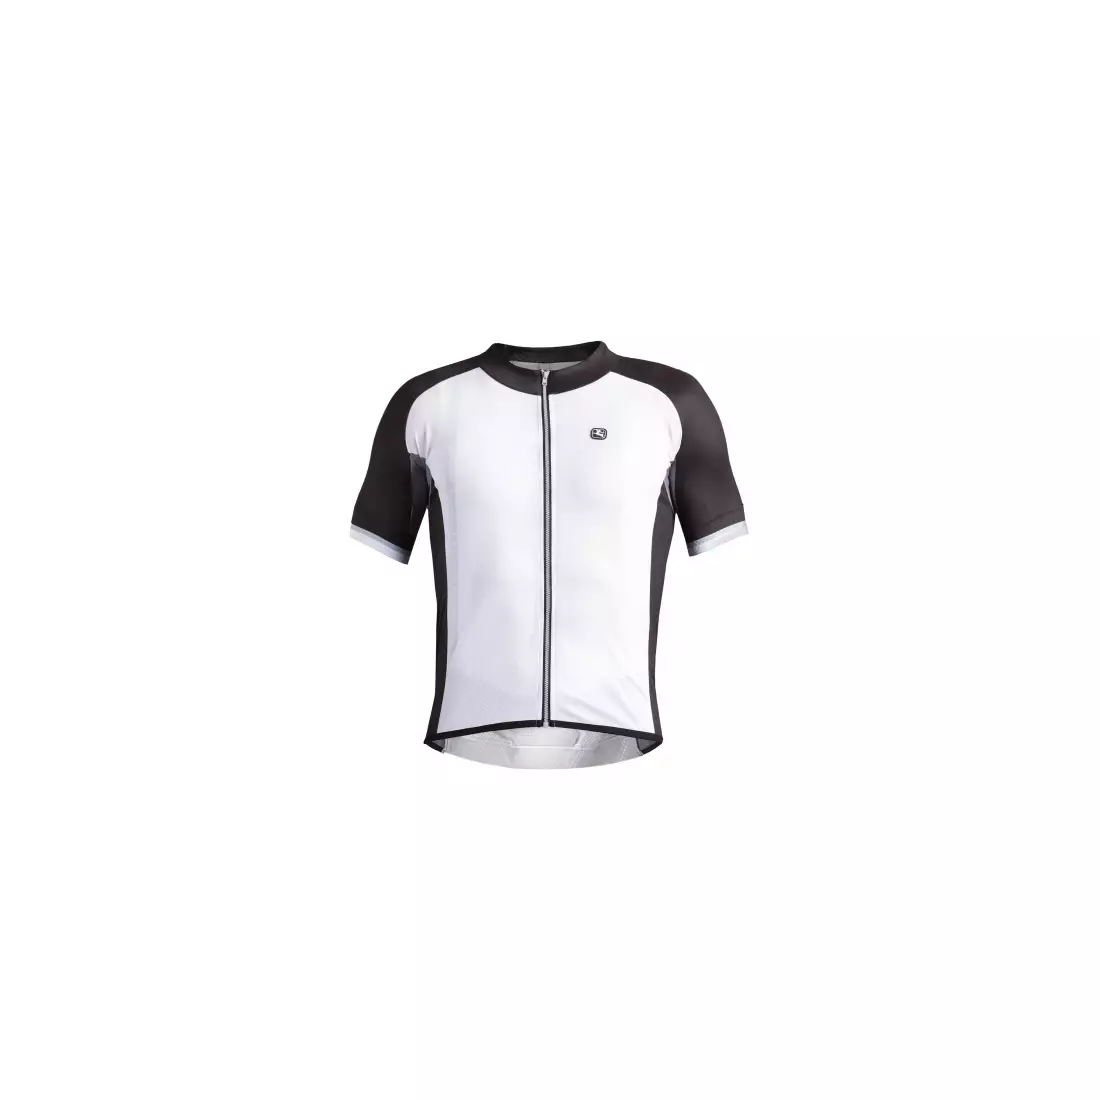 Biely cyklistický dres GIORDANA SILVERLINE